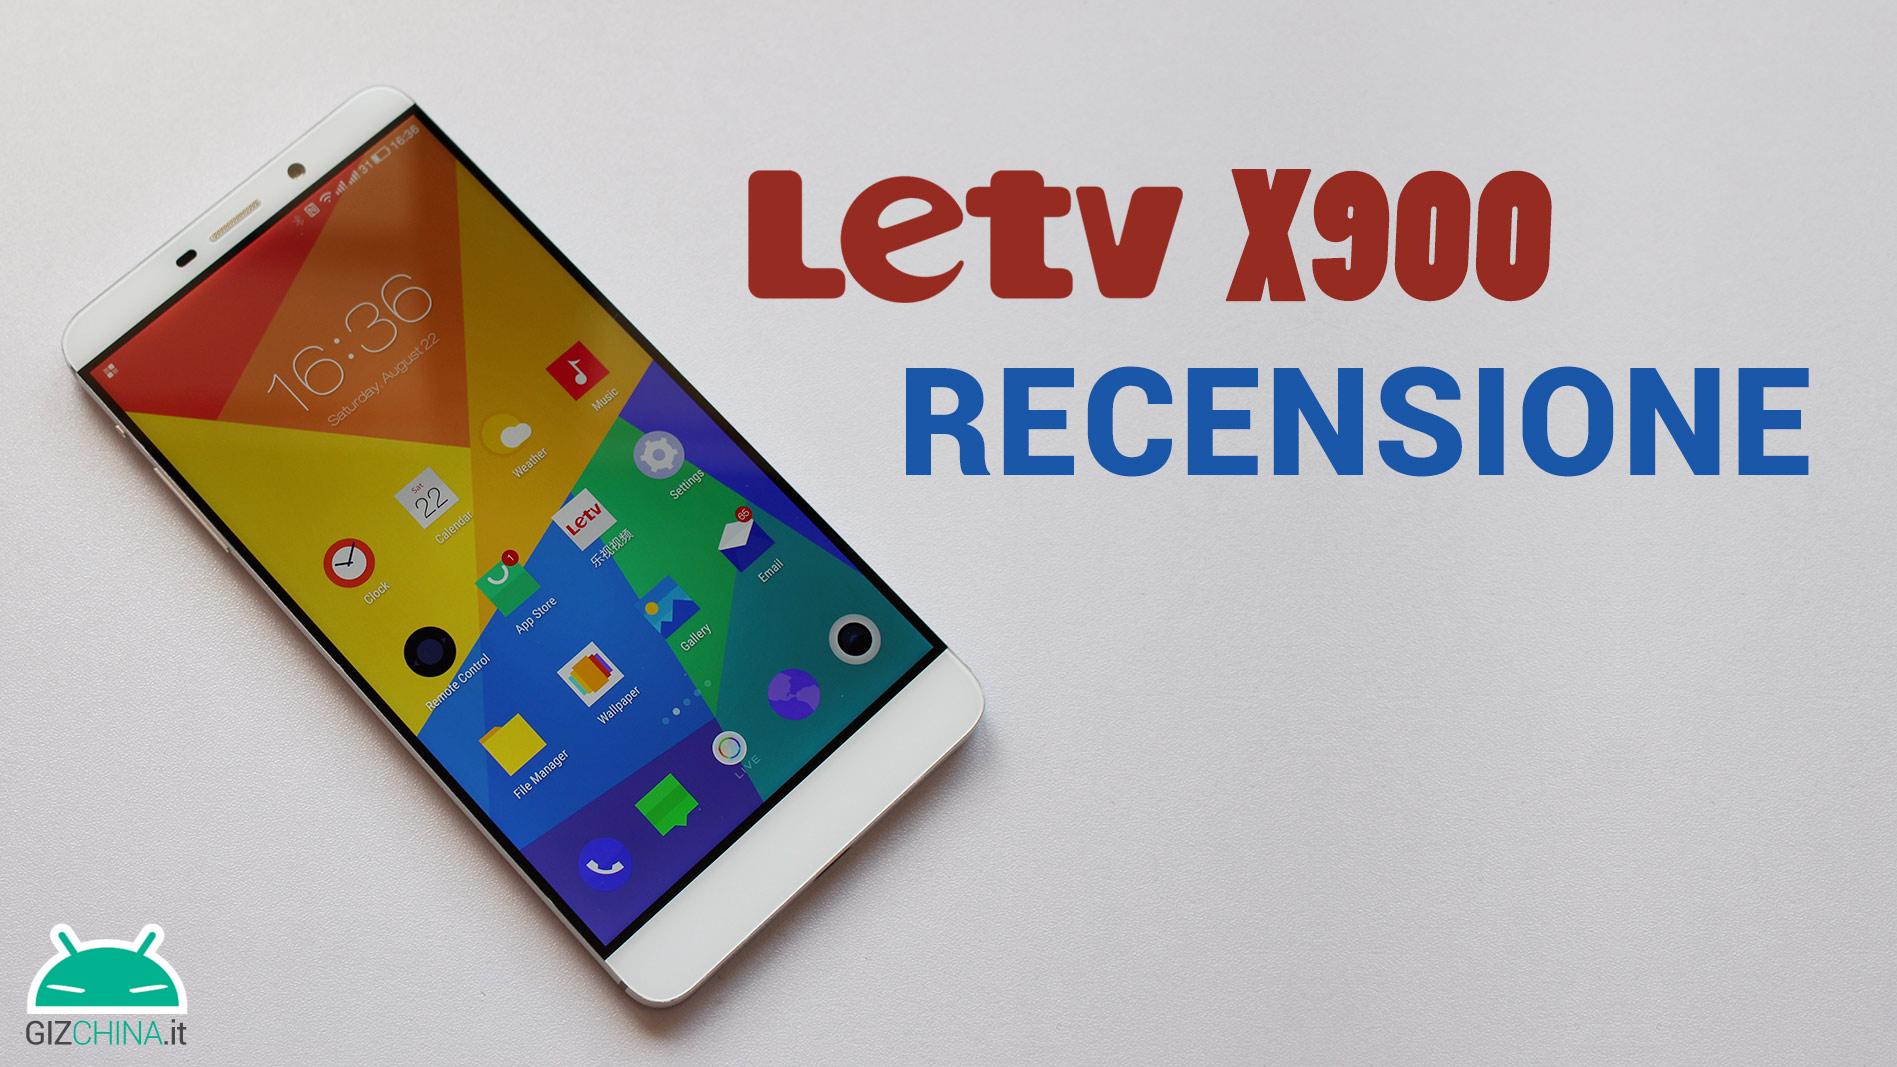 LeTV X900 Max